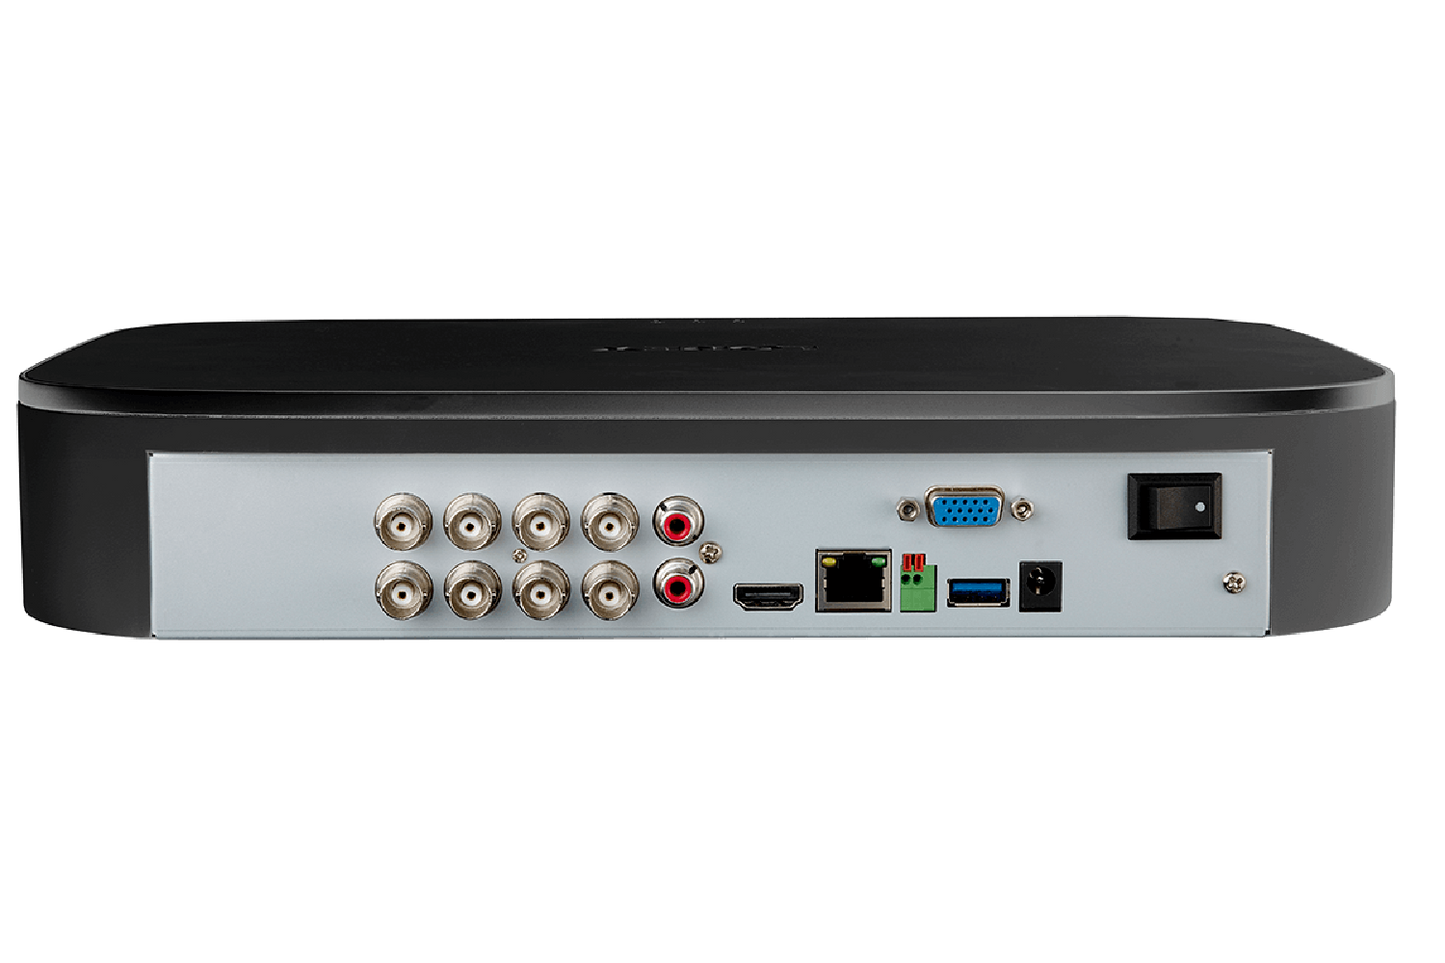 Sistema de seguridad de 8 canales hd de 1080p 8camaras